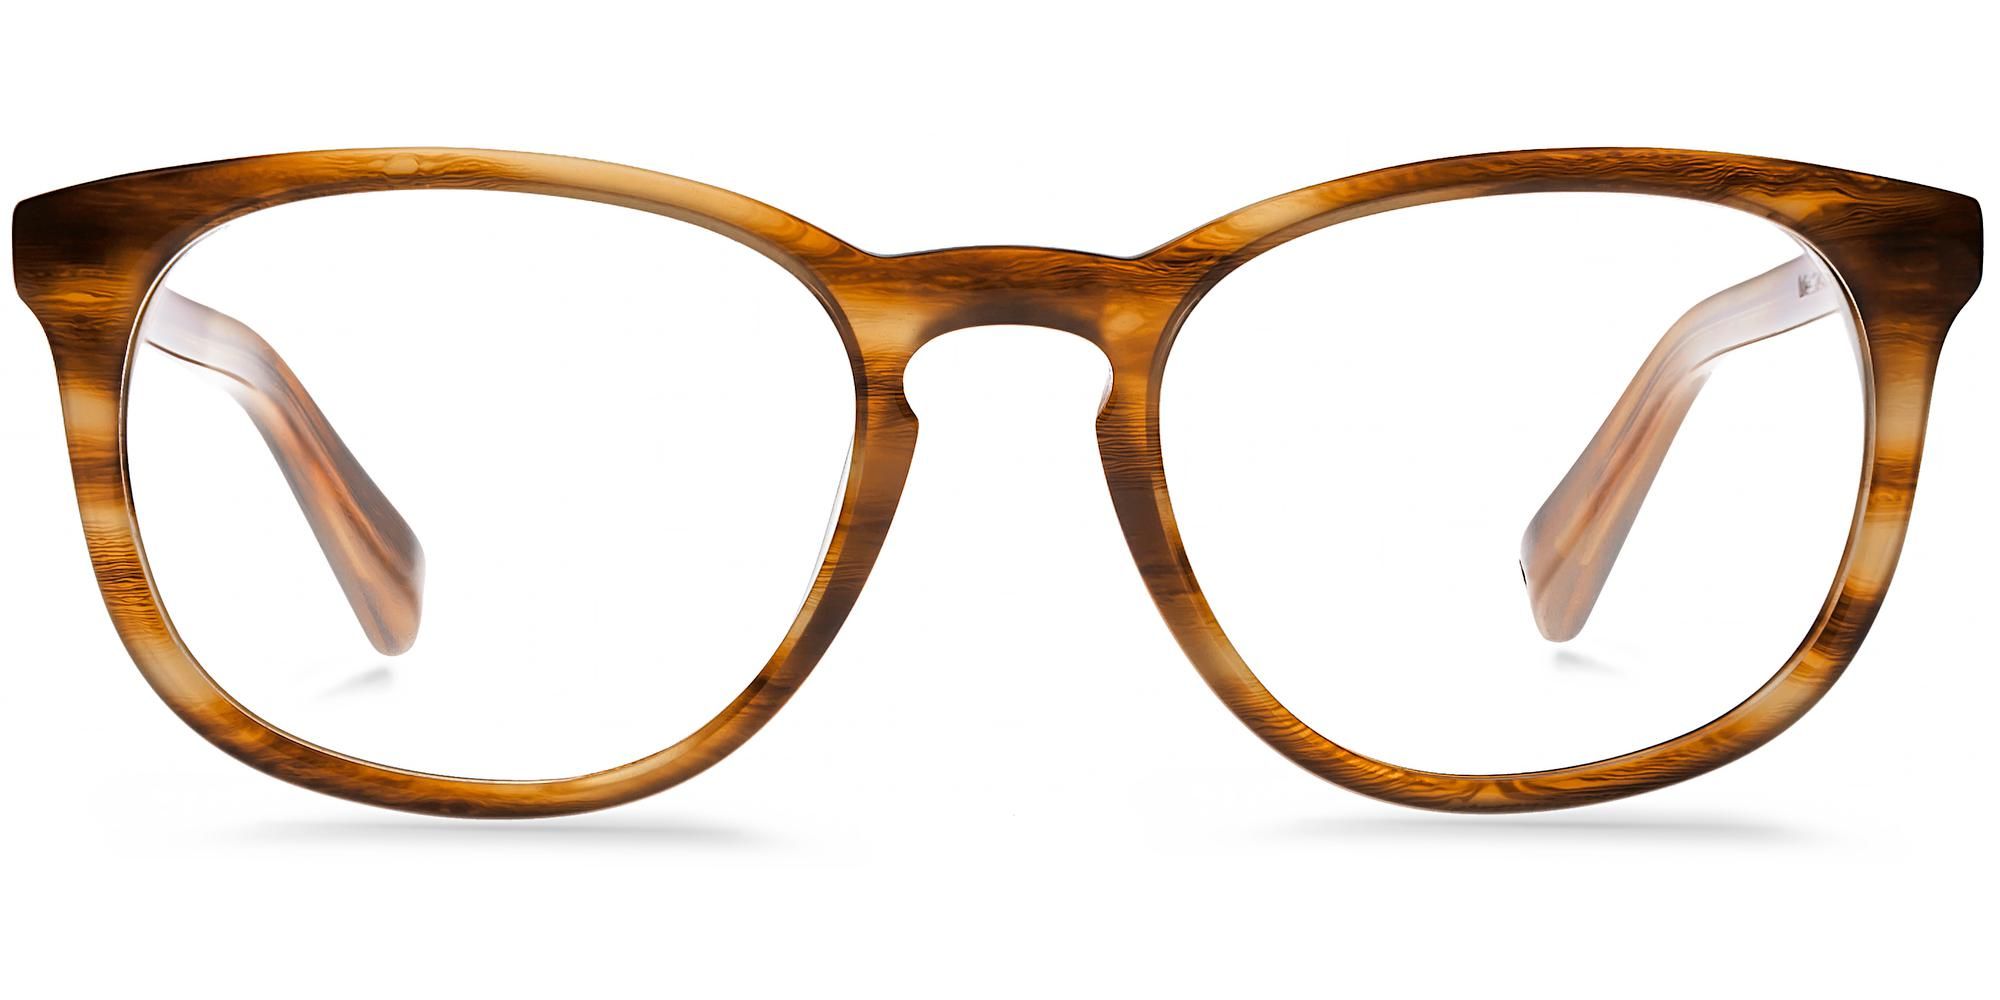 Lyle Eyeglasses in English Oak for Women | Warby Parker